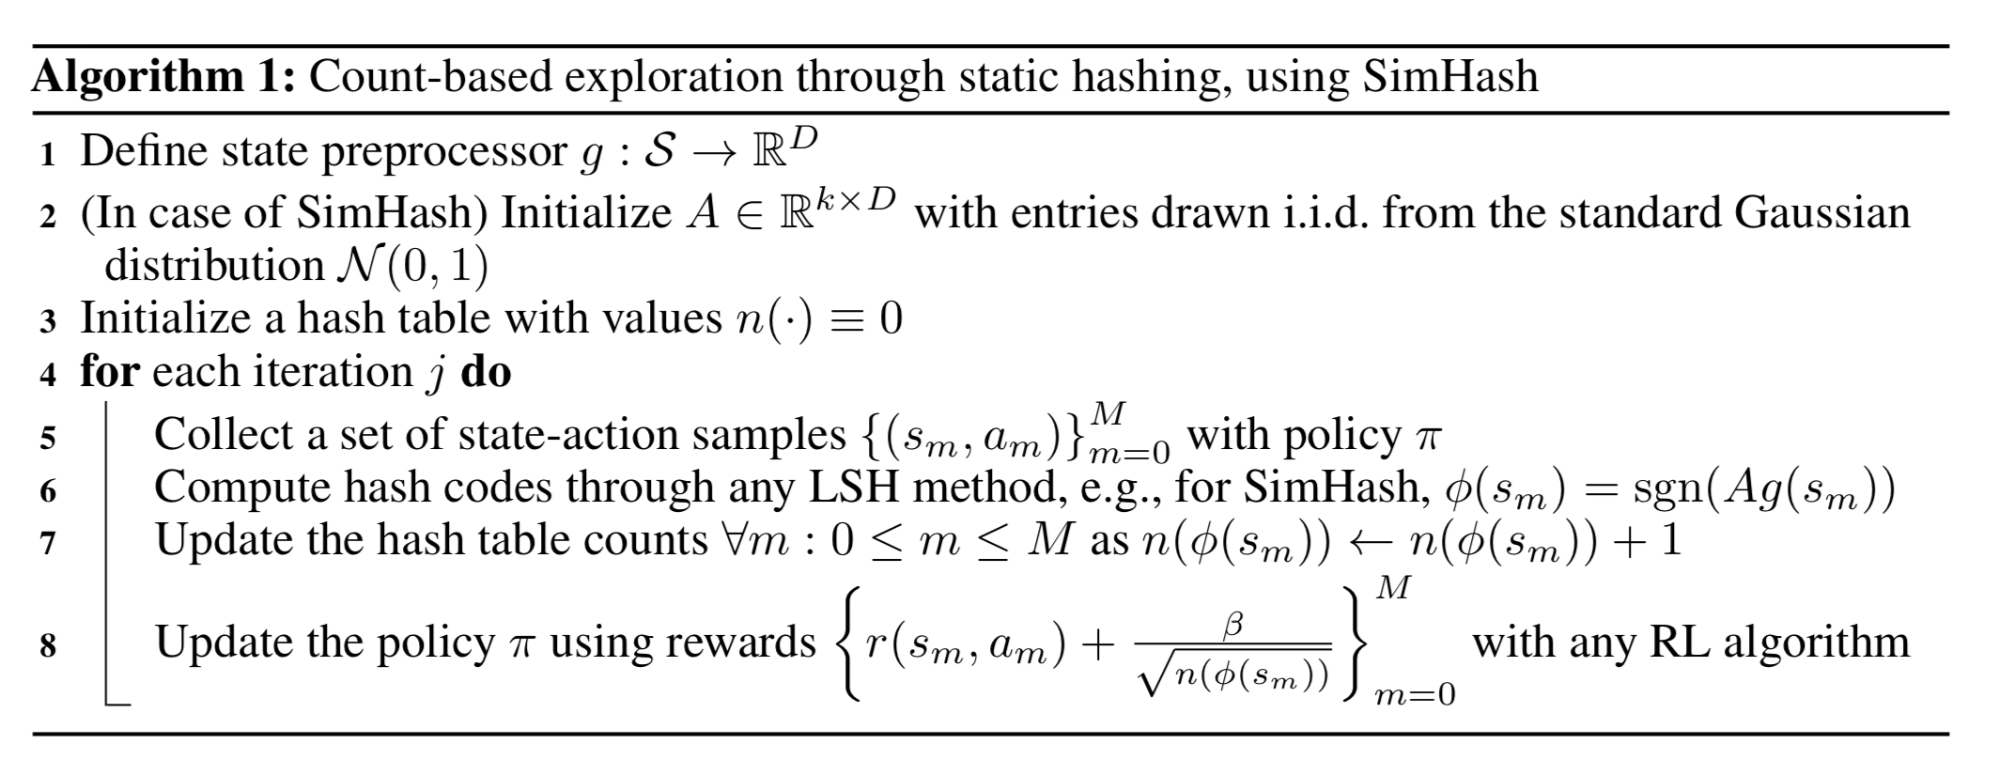 使用SimHash作为高维状态的哈希函数来进行基于计数的探索算法。